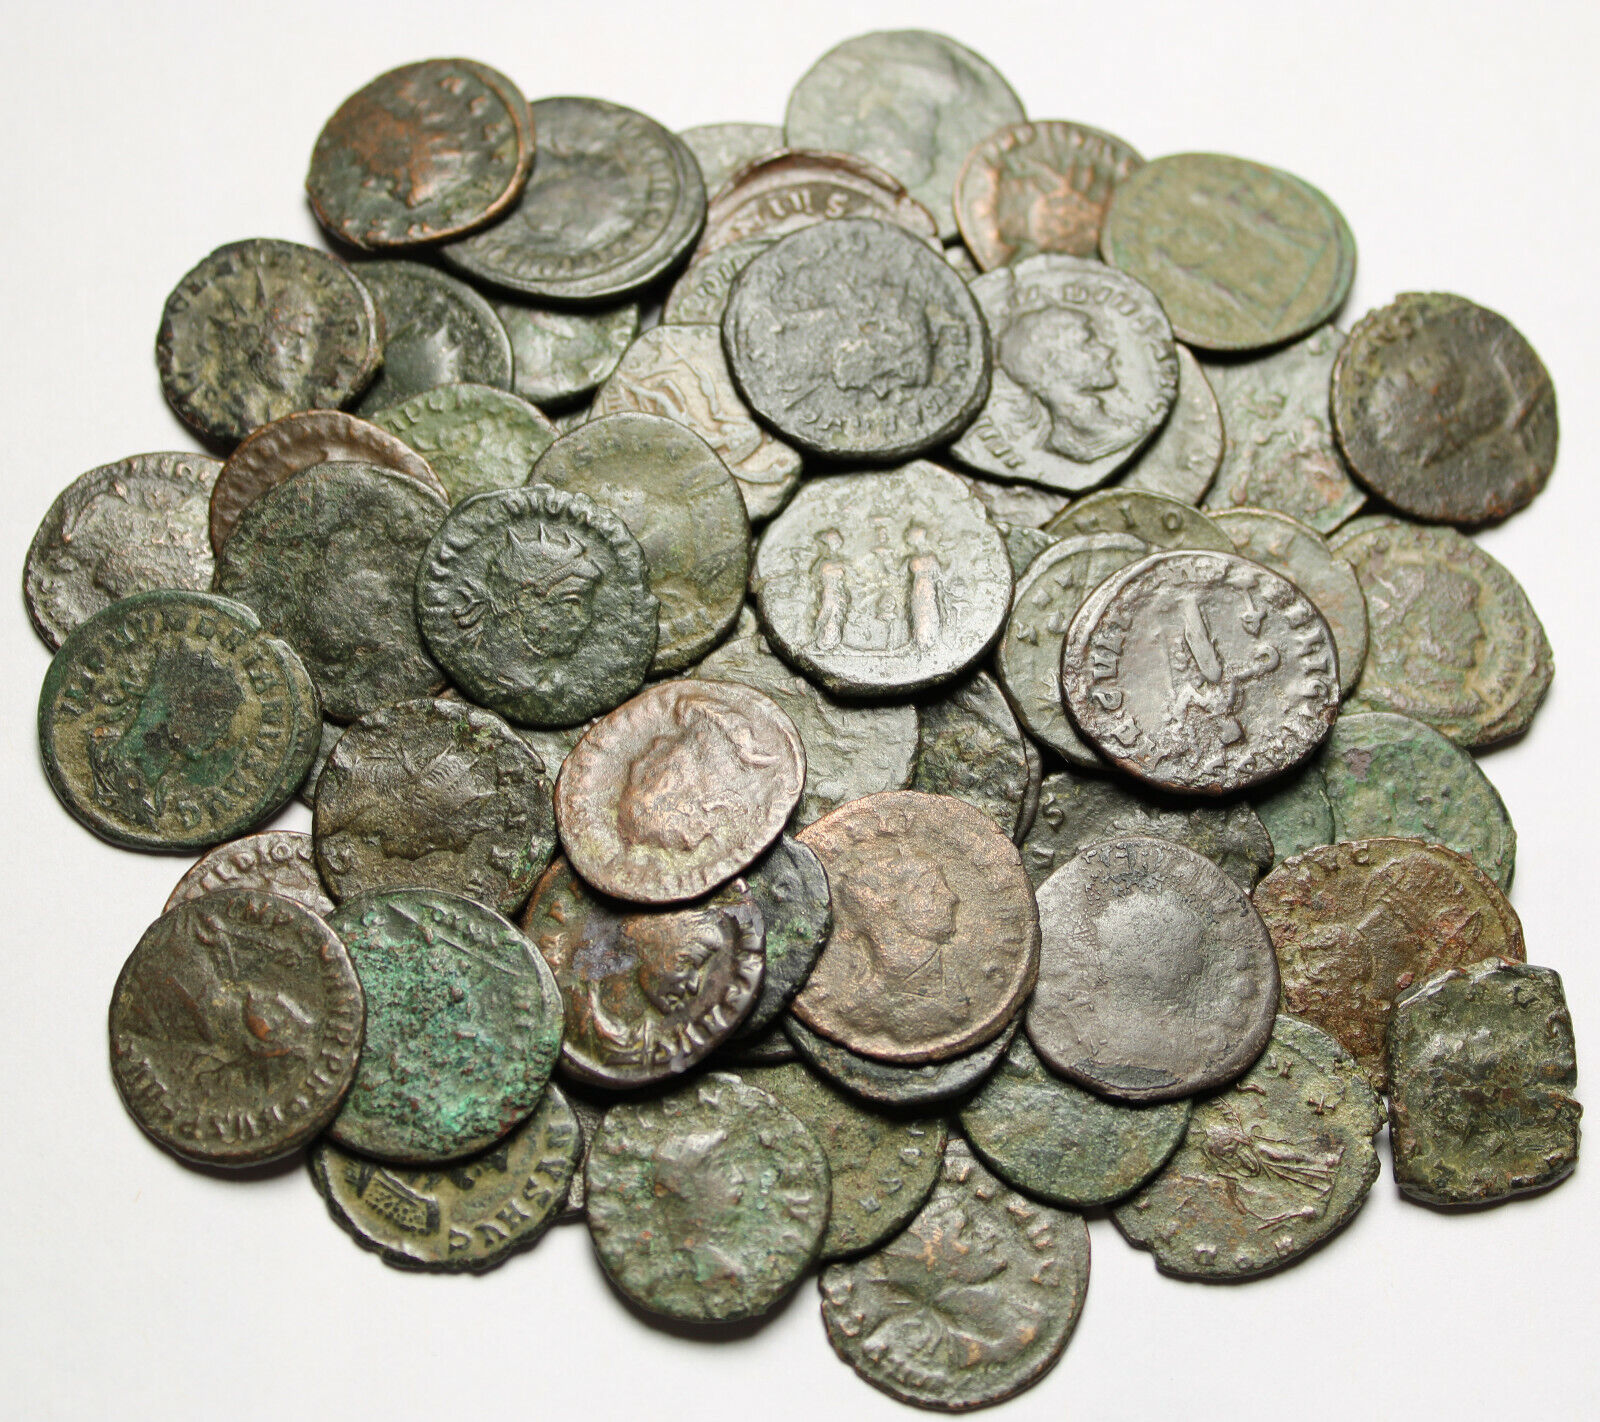 Lot of 3 Rare original Ancient Roman Antoninianus coins Probus Aurelian Claudius Без бренда - фотография #3